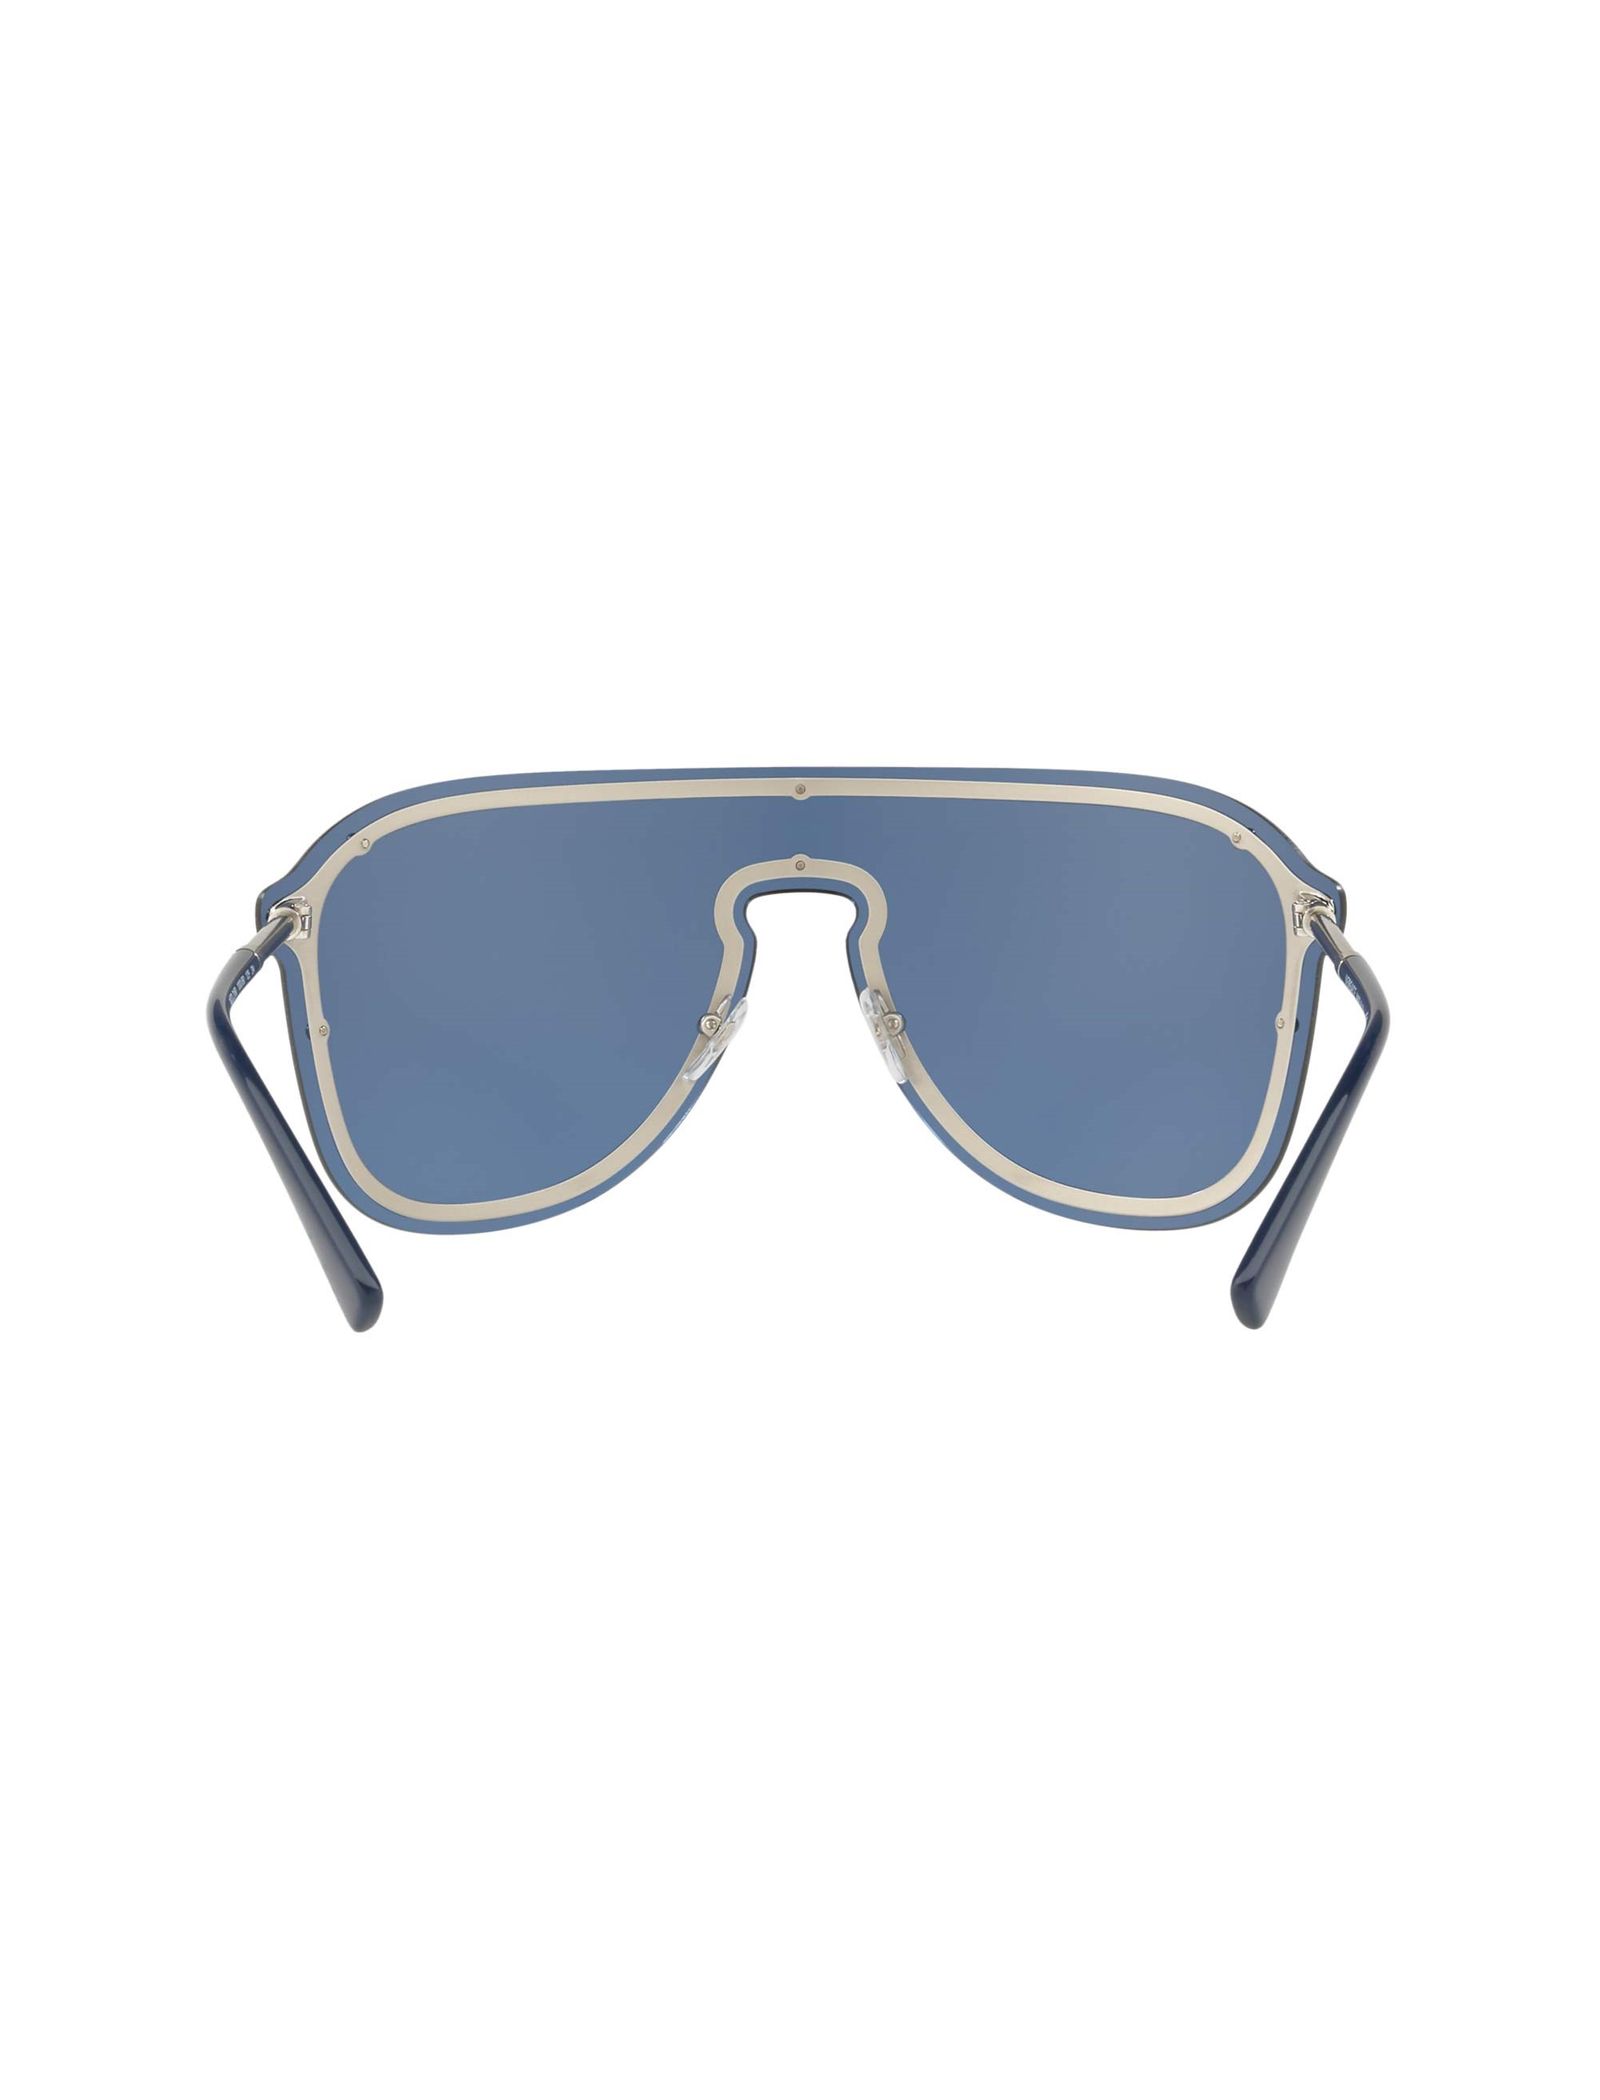 عینک آفتابی خلبانی زنانه - ورساچه - نقره اي - 5